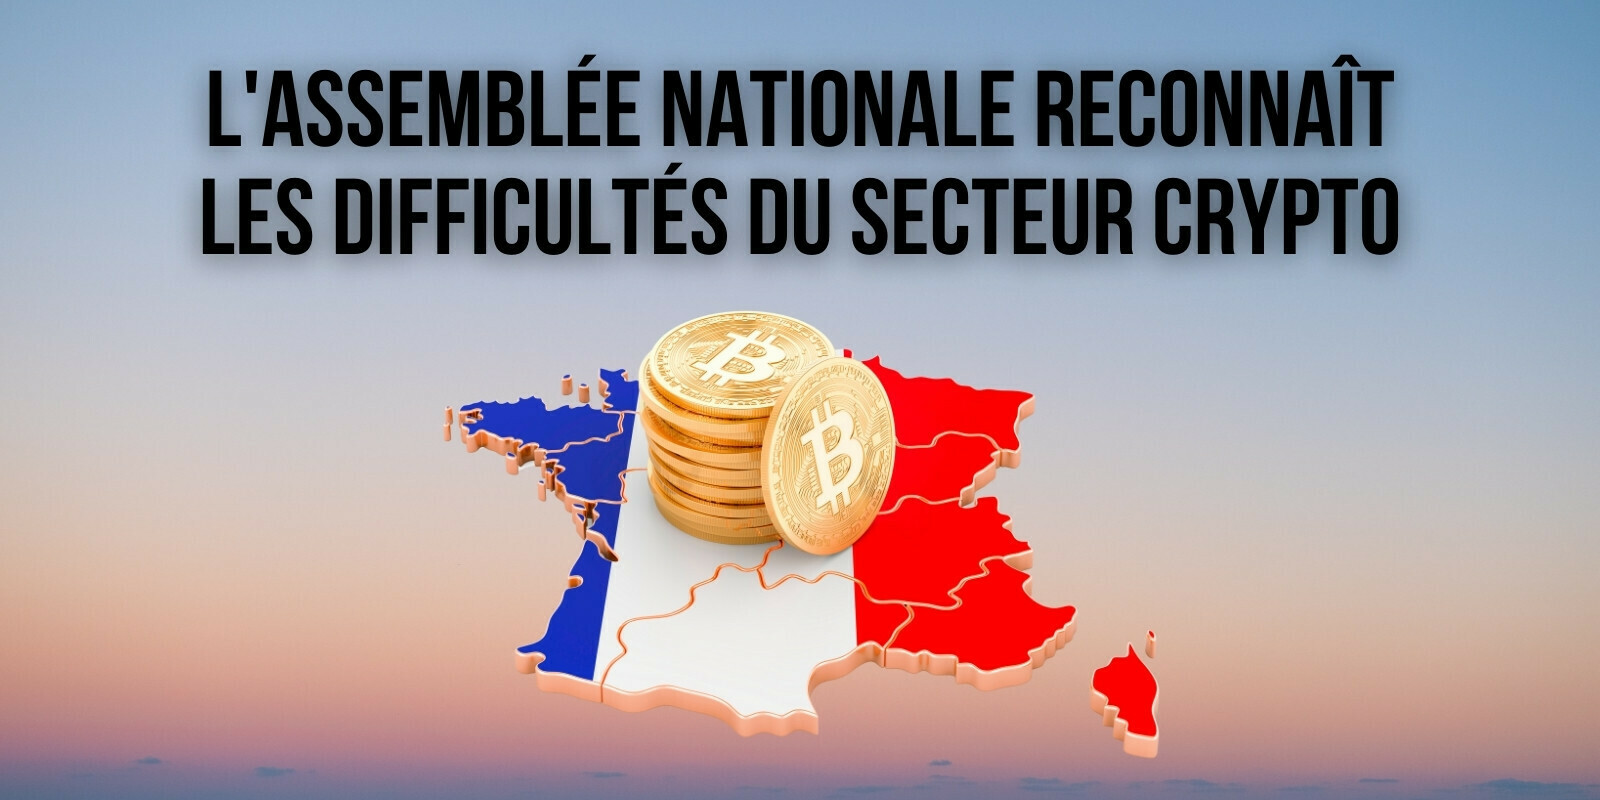 Un rapport de l'Assemblée nationale constate les difficultés du secteur des actifs numériques en France